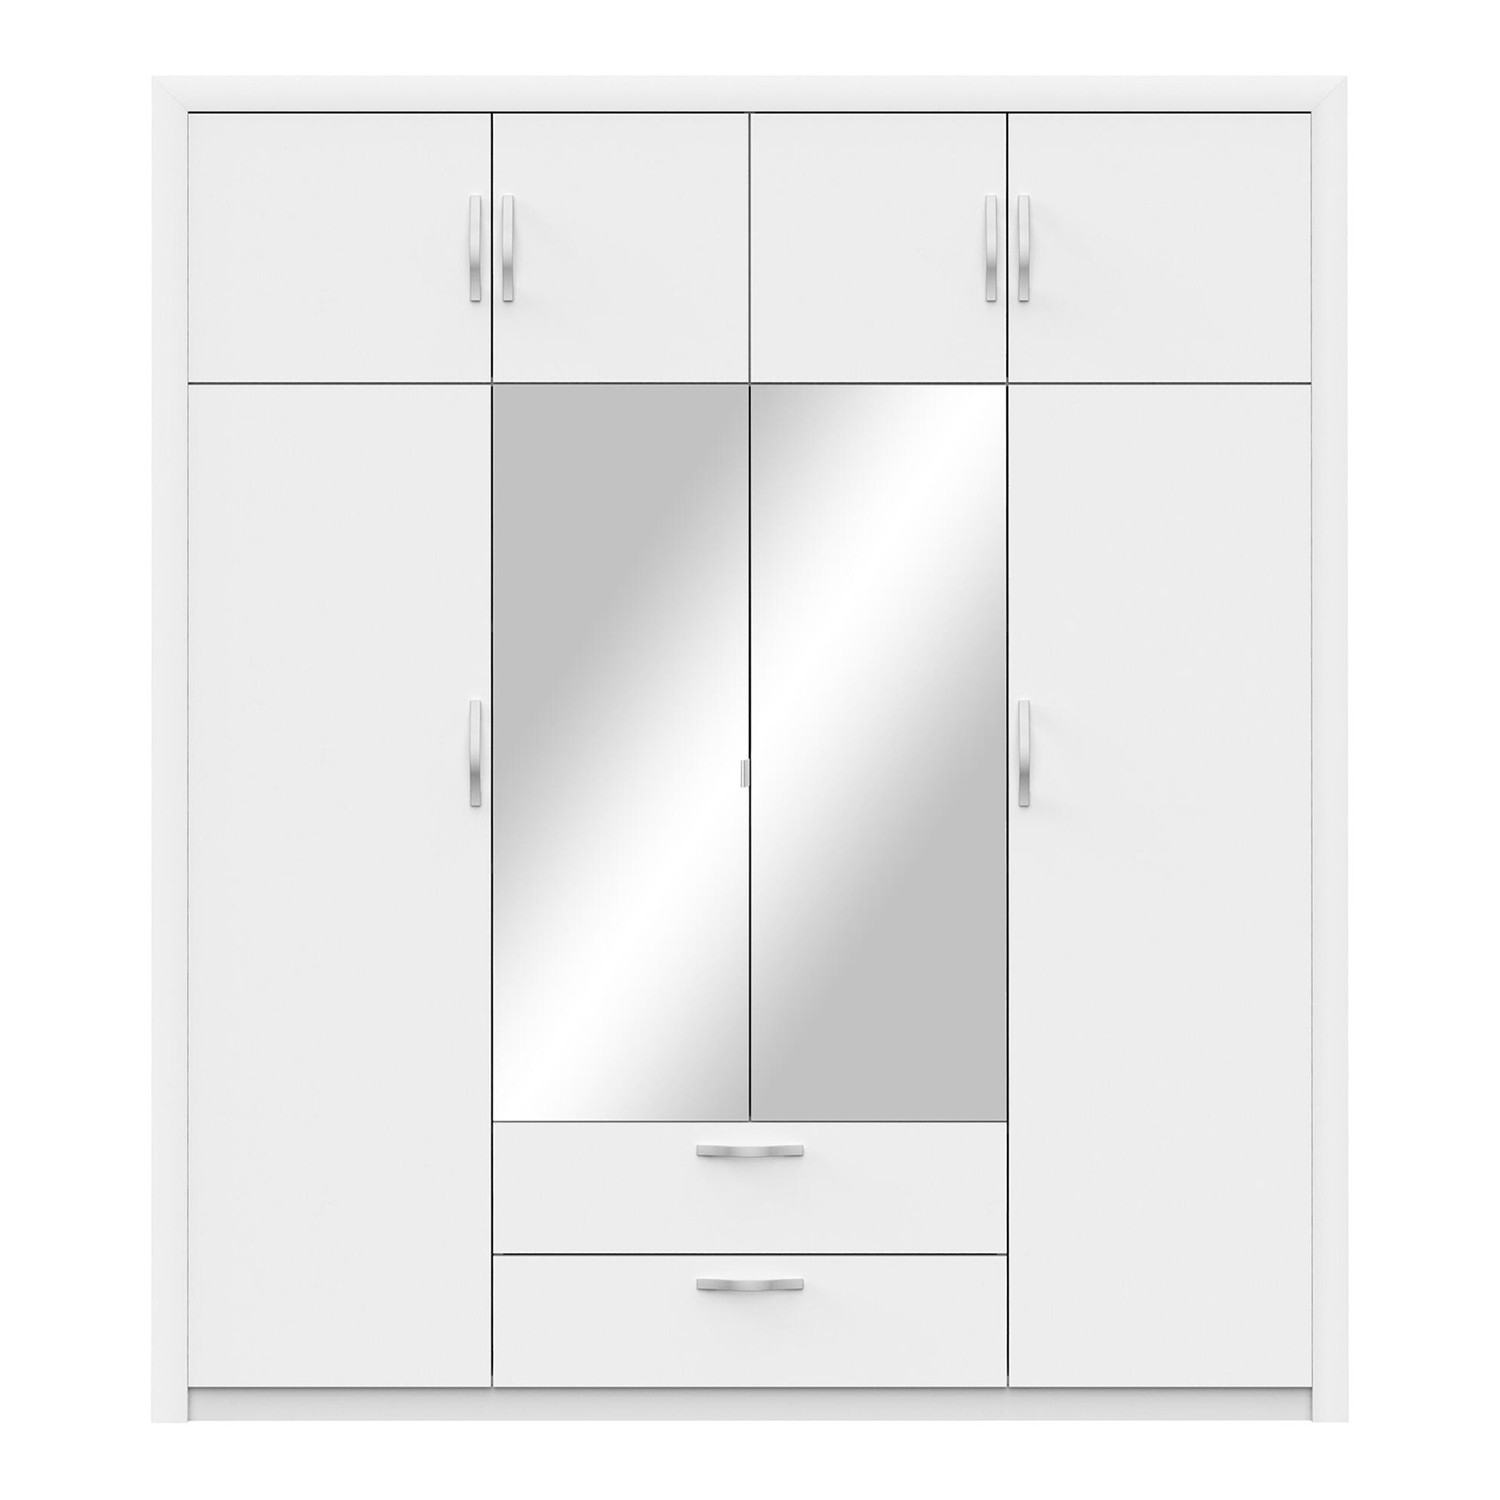 IDEA Шкаф общий 4-дверный PLUTON жемчужно-белый